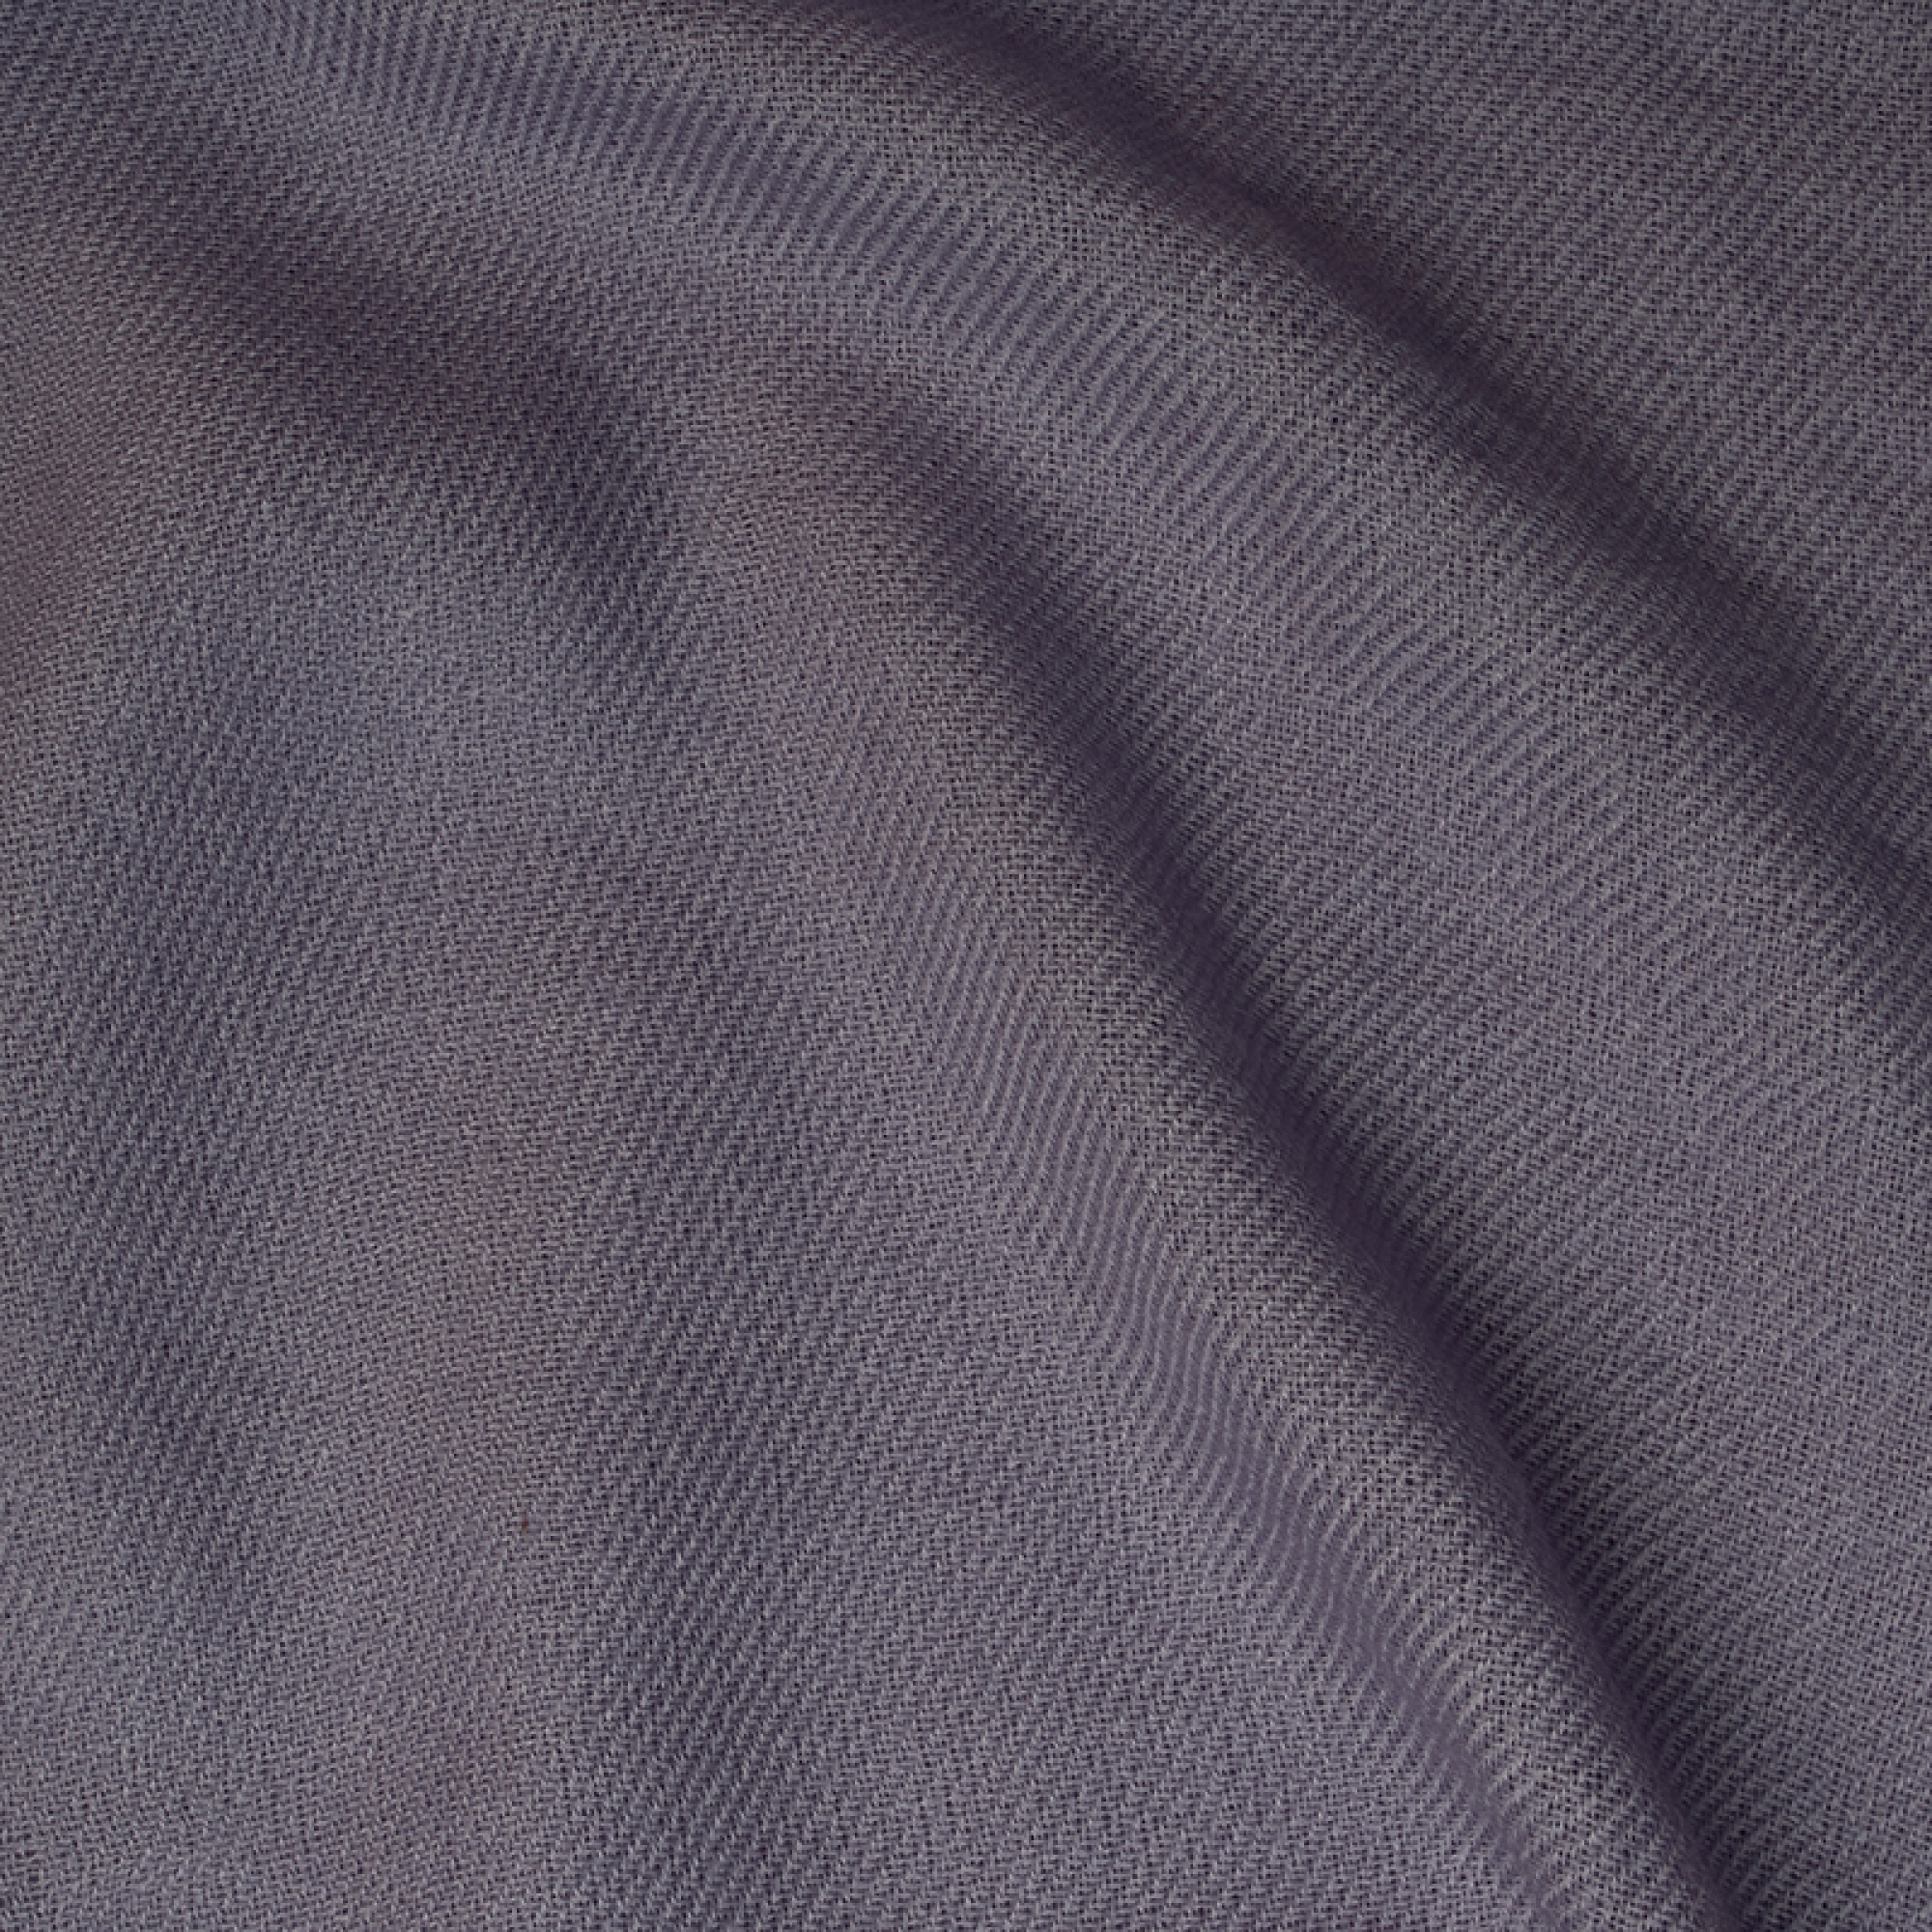 Cachemire accessoires couvertures plaids toodoo plain m 180 x 220 parme gris 180 x 220 cm